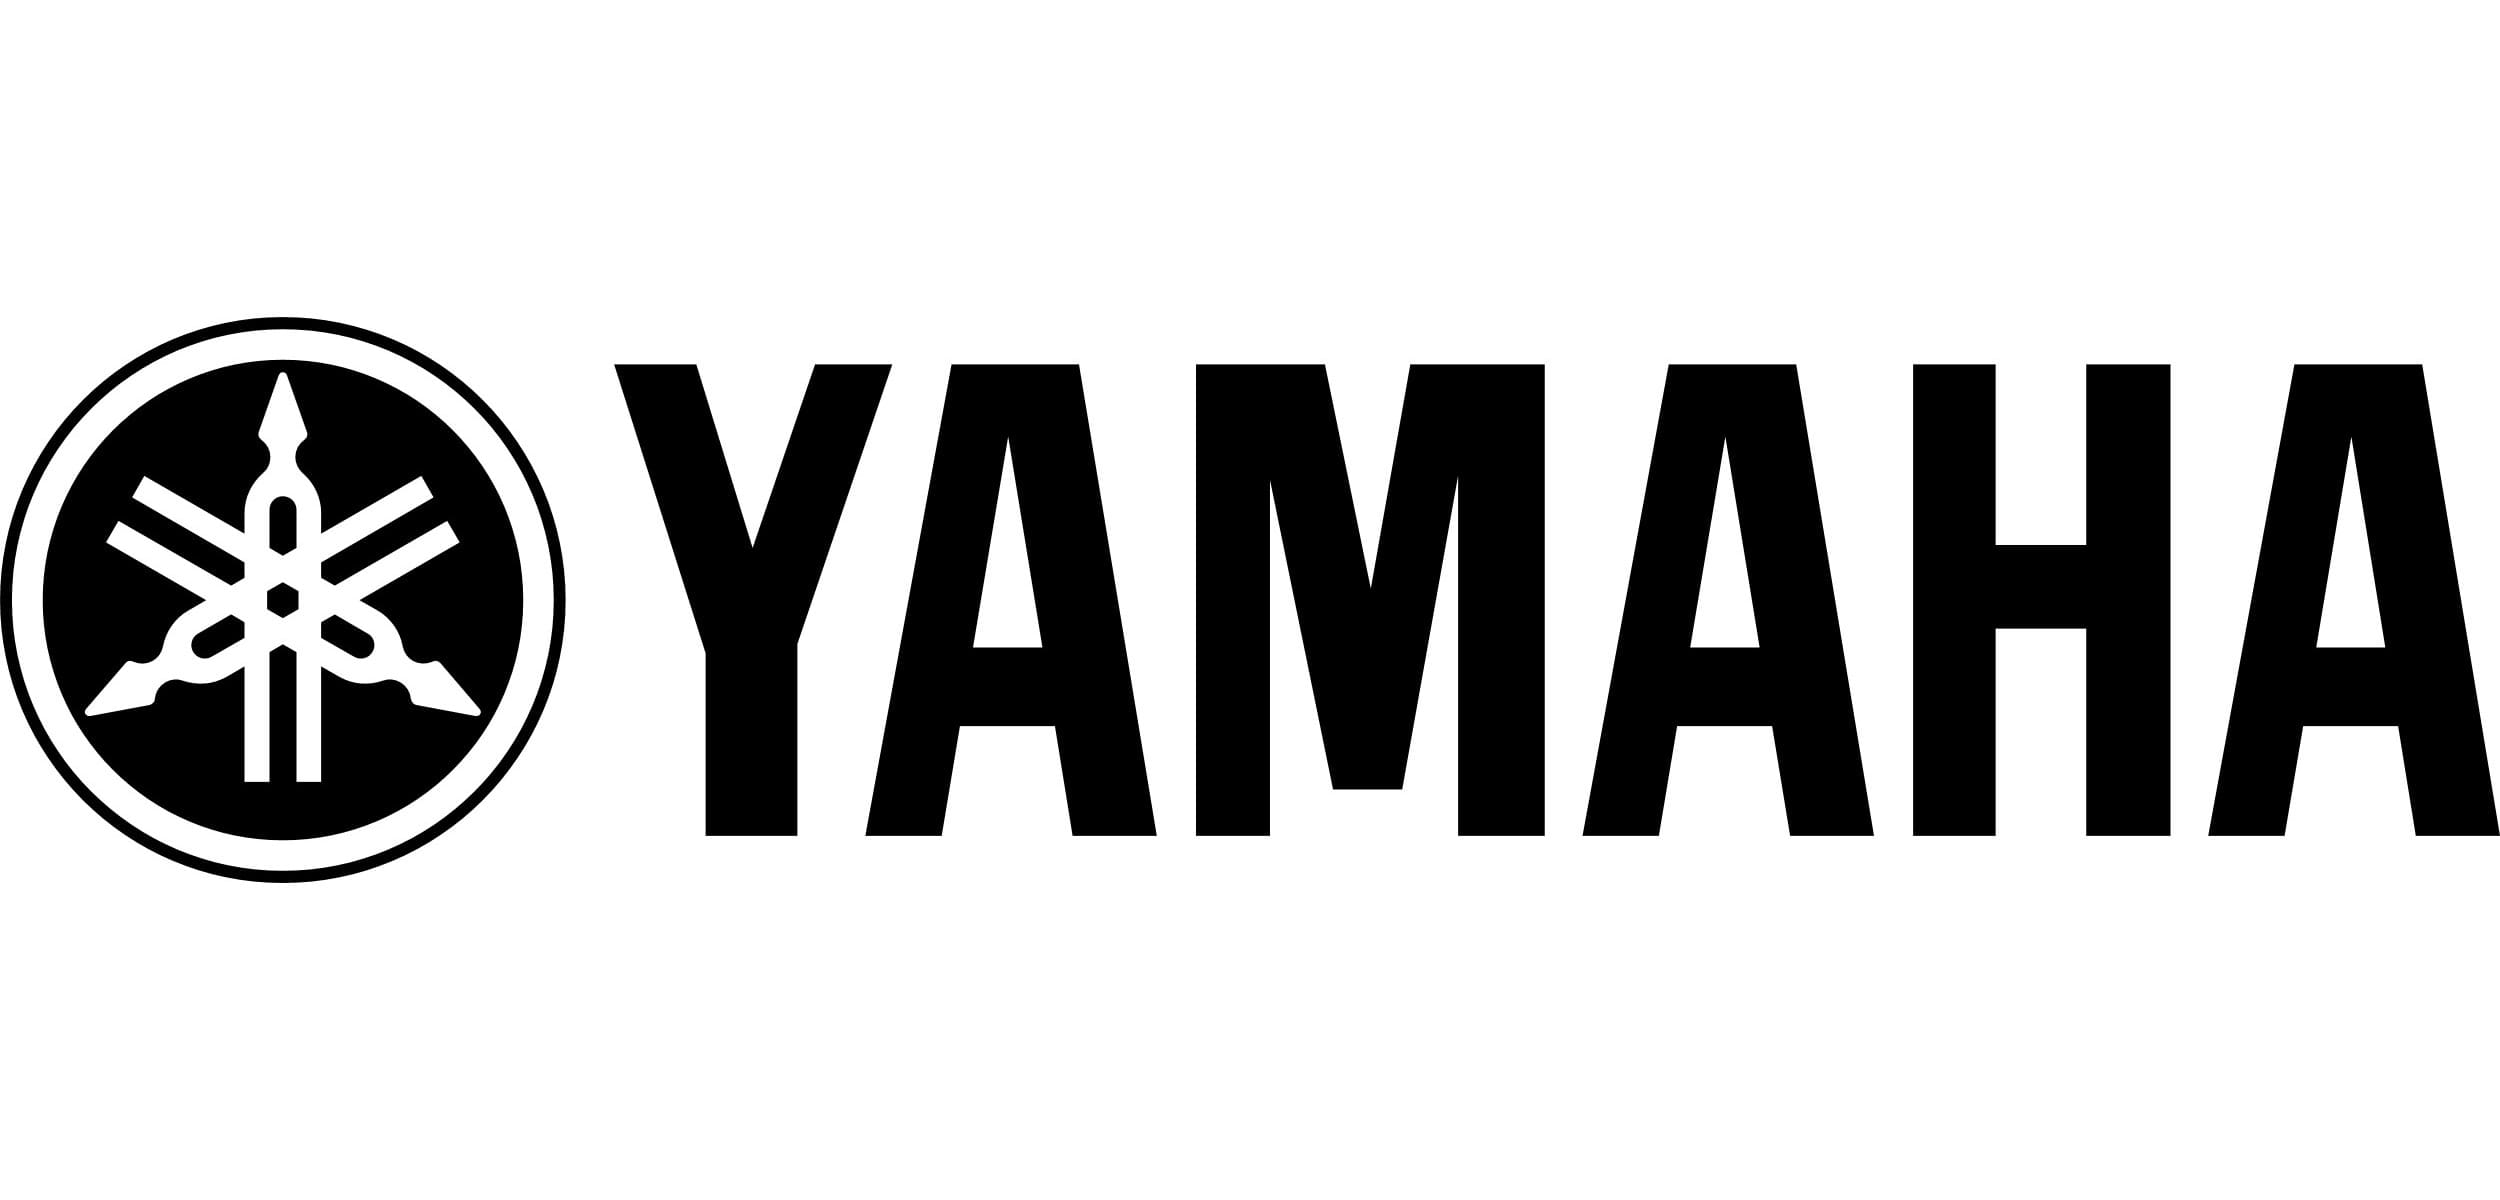 Yamaha image